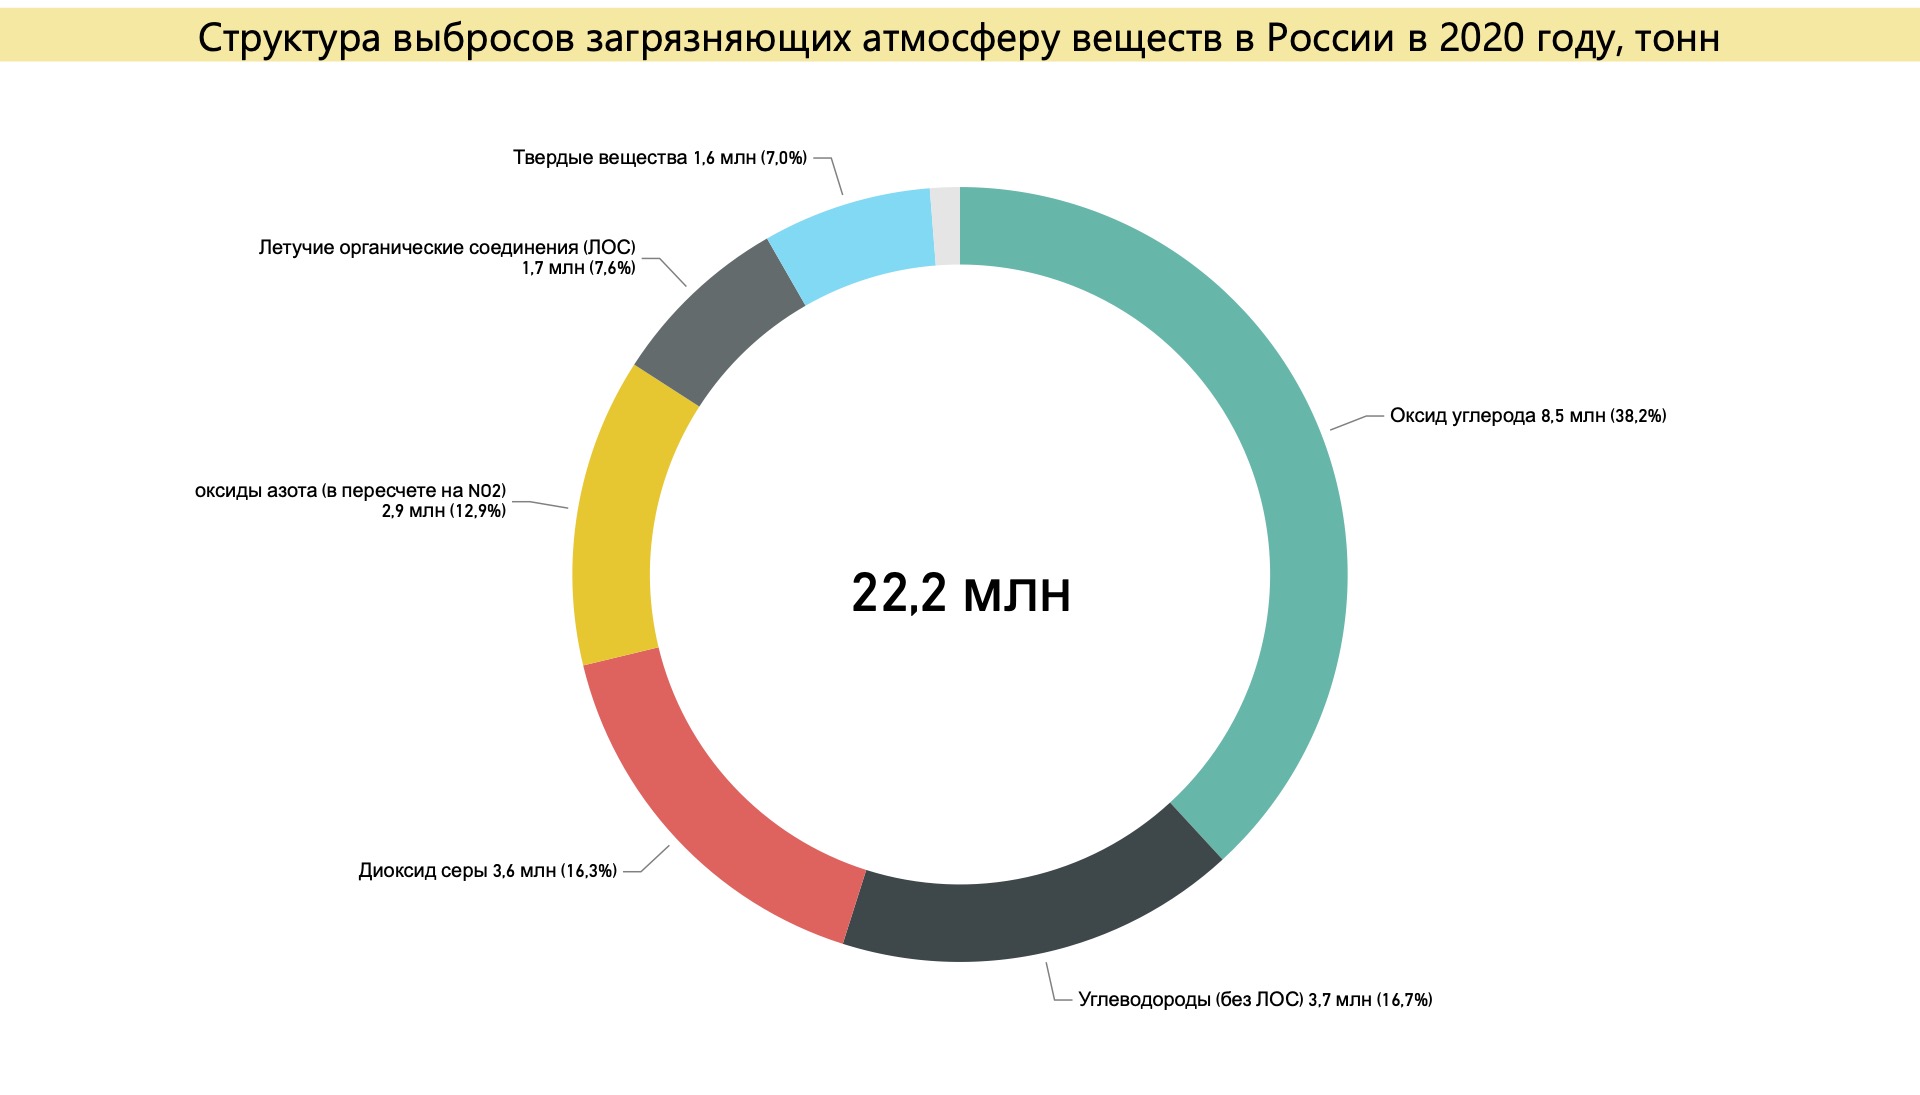 Структура выбросов загрязняющих атмосферу веществ в России. Источник: расчет автора по данным Росприроднадзора